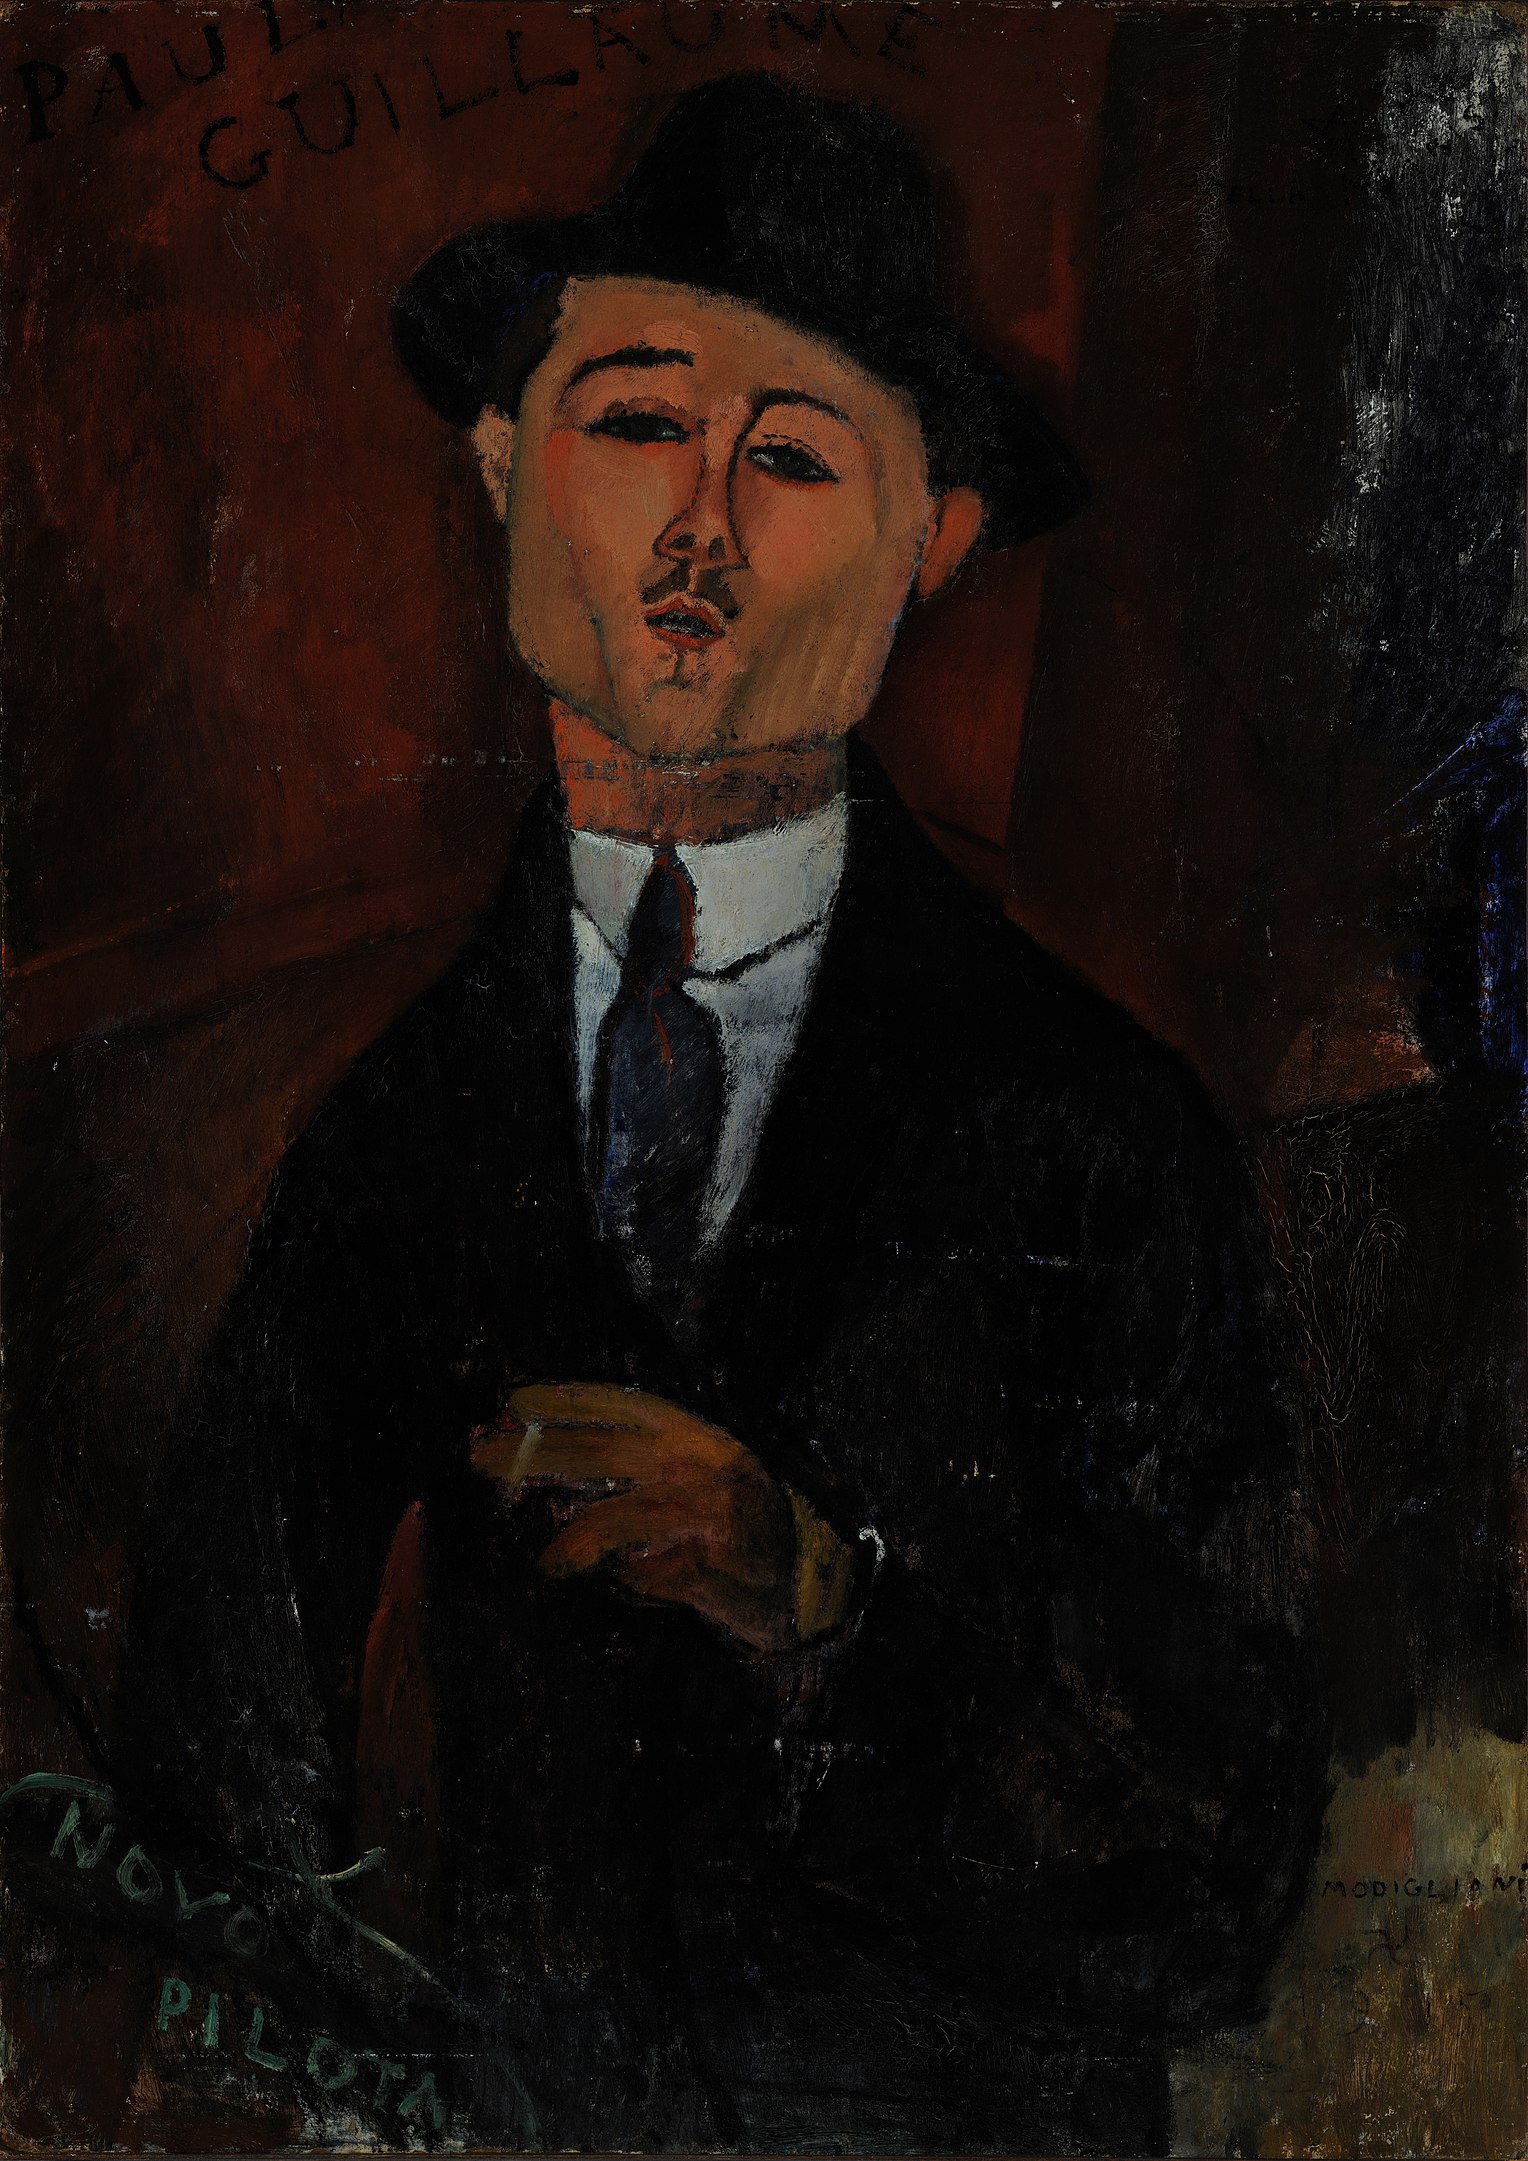 保羅·紀堯姆, 新舵手 by Amedeo Modigliani - 1915 年 - 105 x 75 cm 